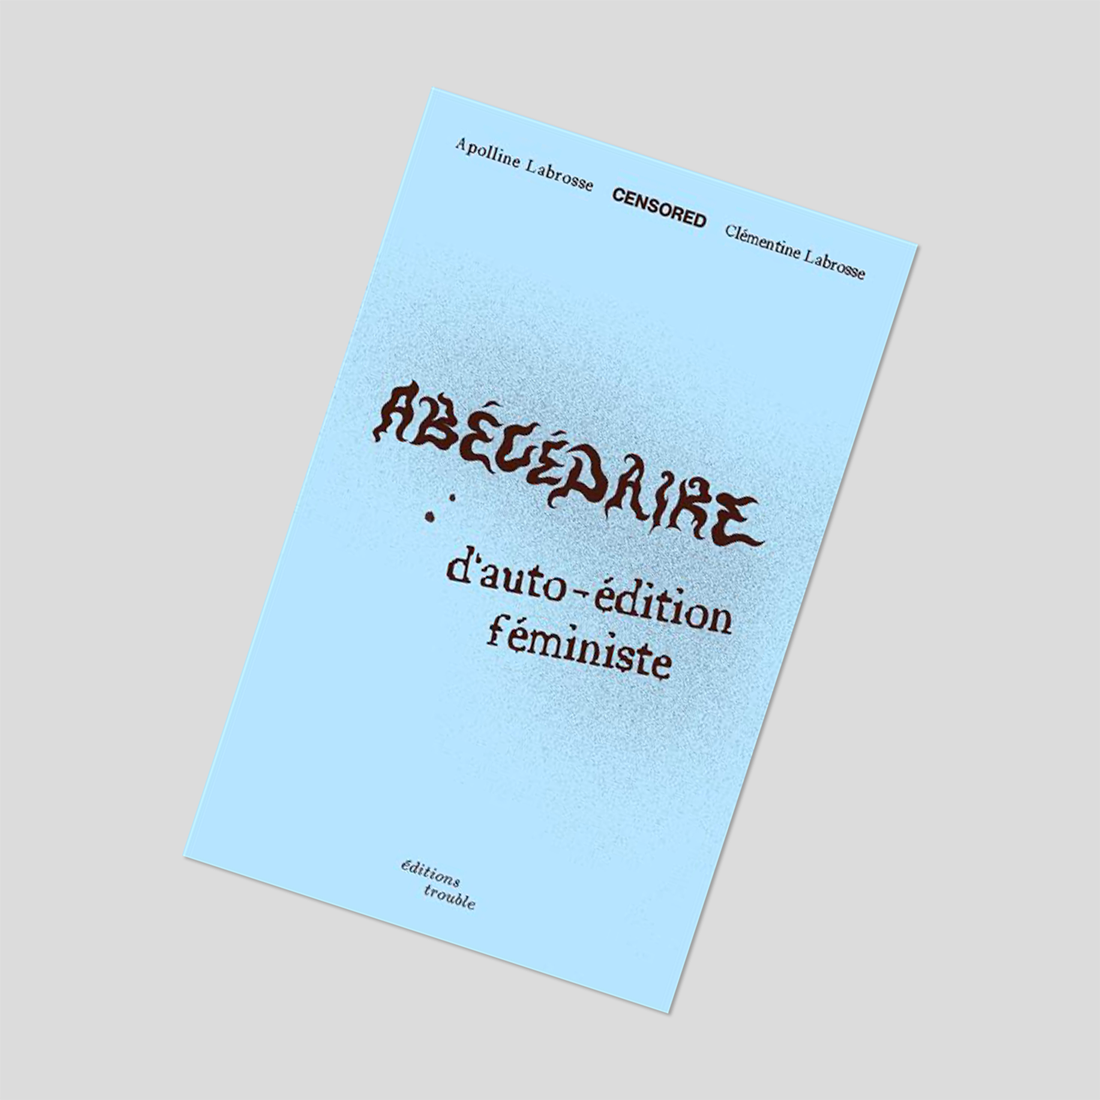 Abécédaire d'auto édition féministe - Apolline Labrosse & Clémentine Labrosse